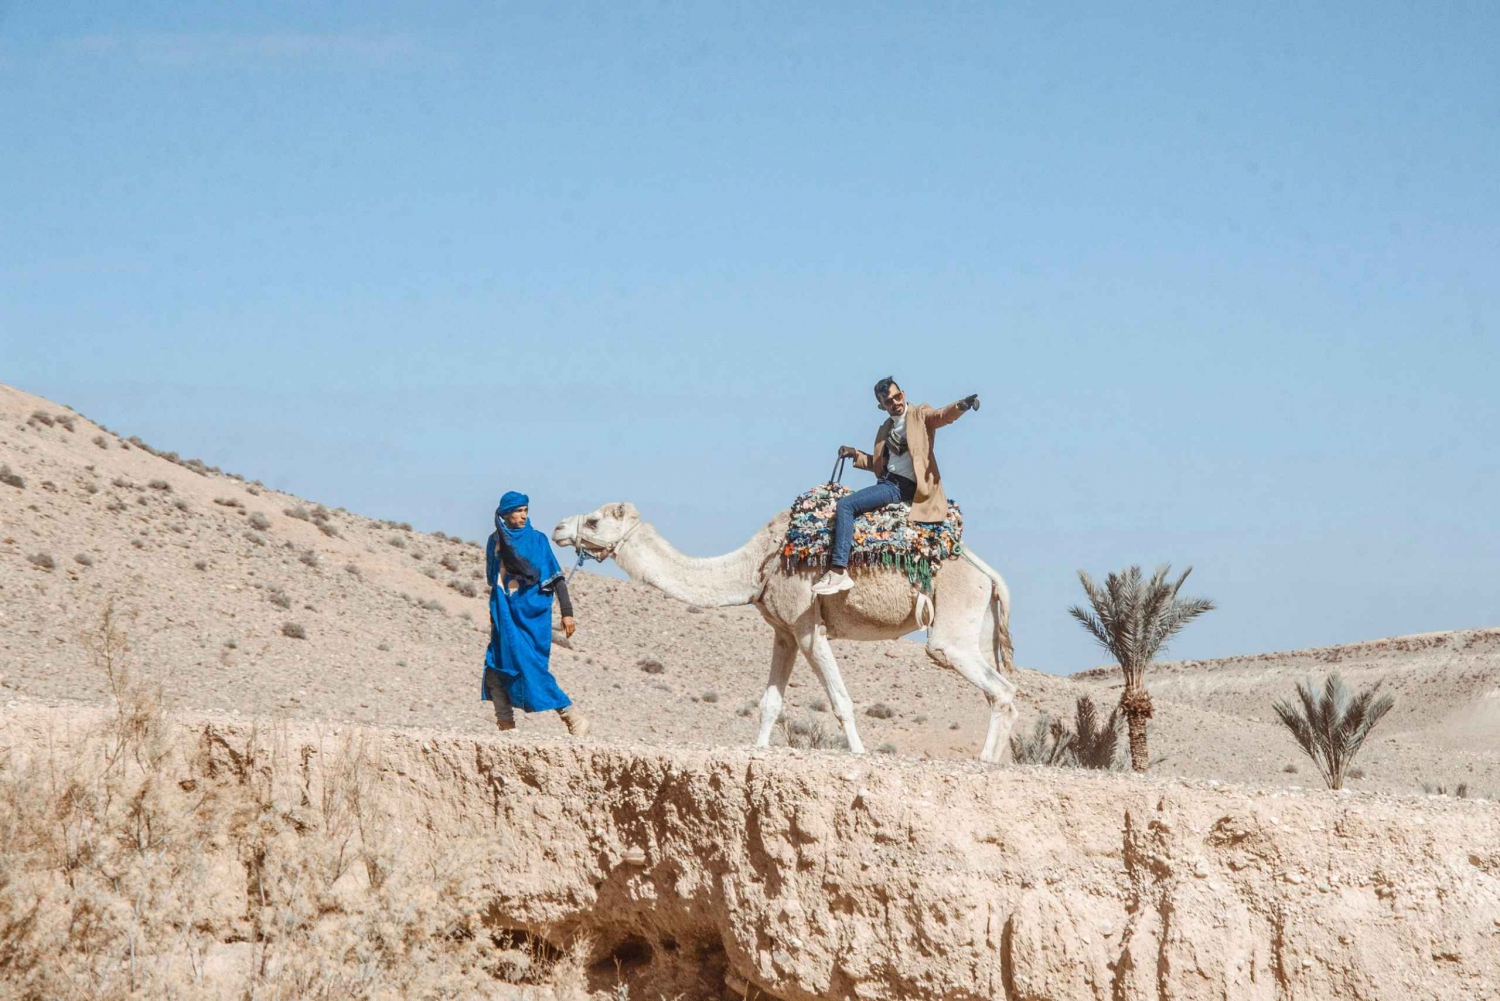 Agafay Desert: Quad Bike and Camel Ride Adventure Tour